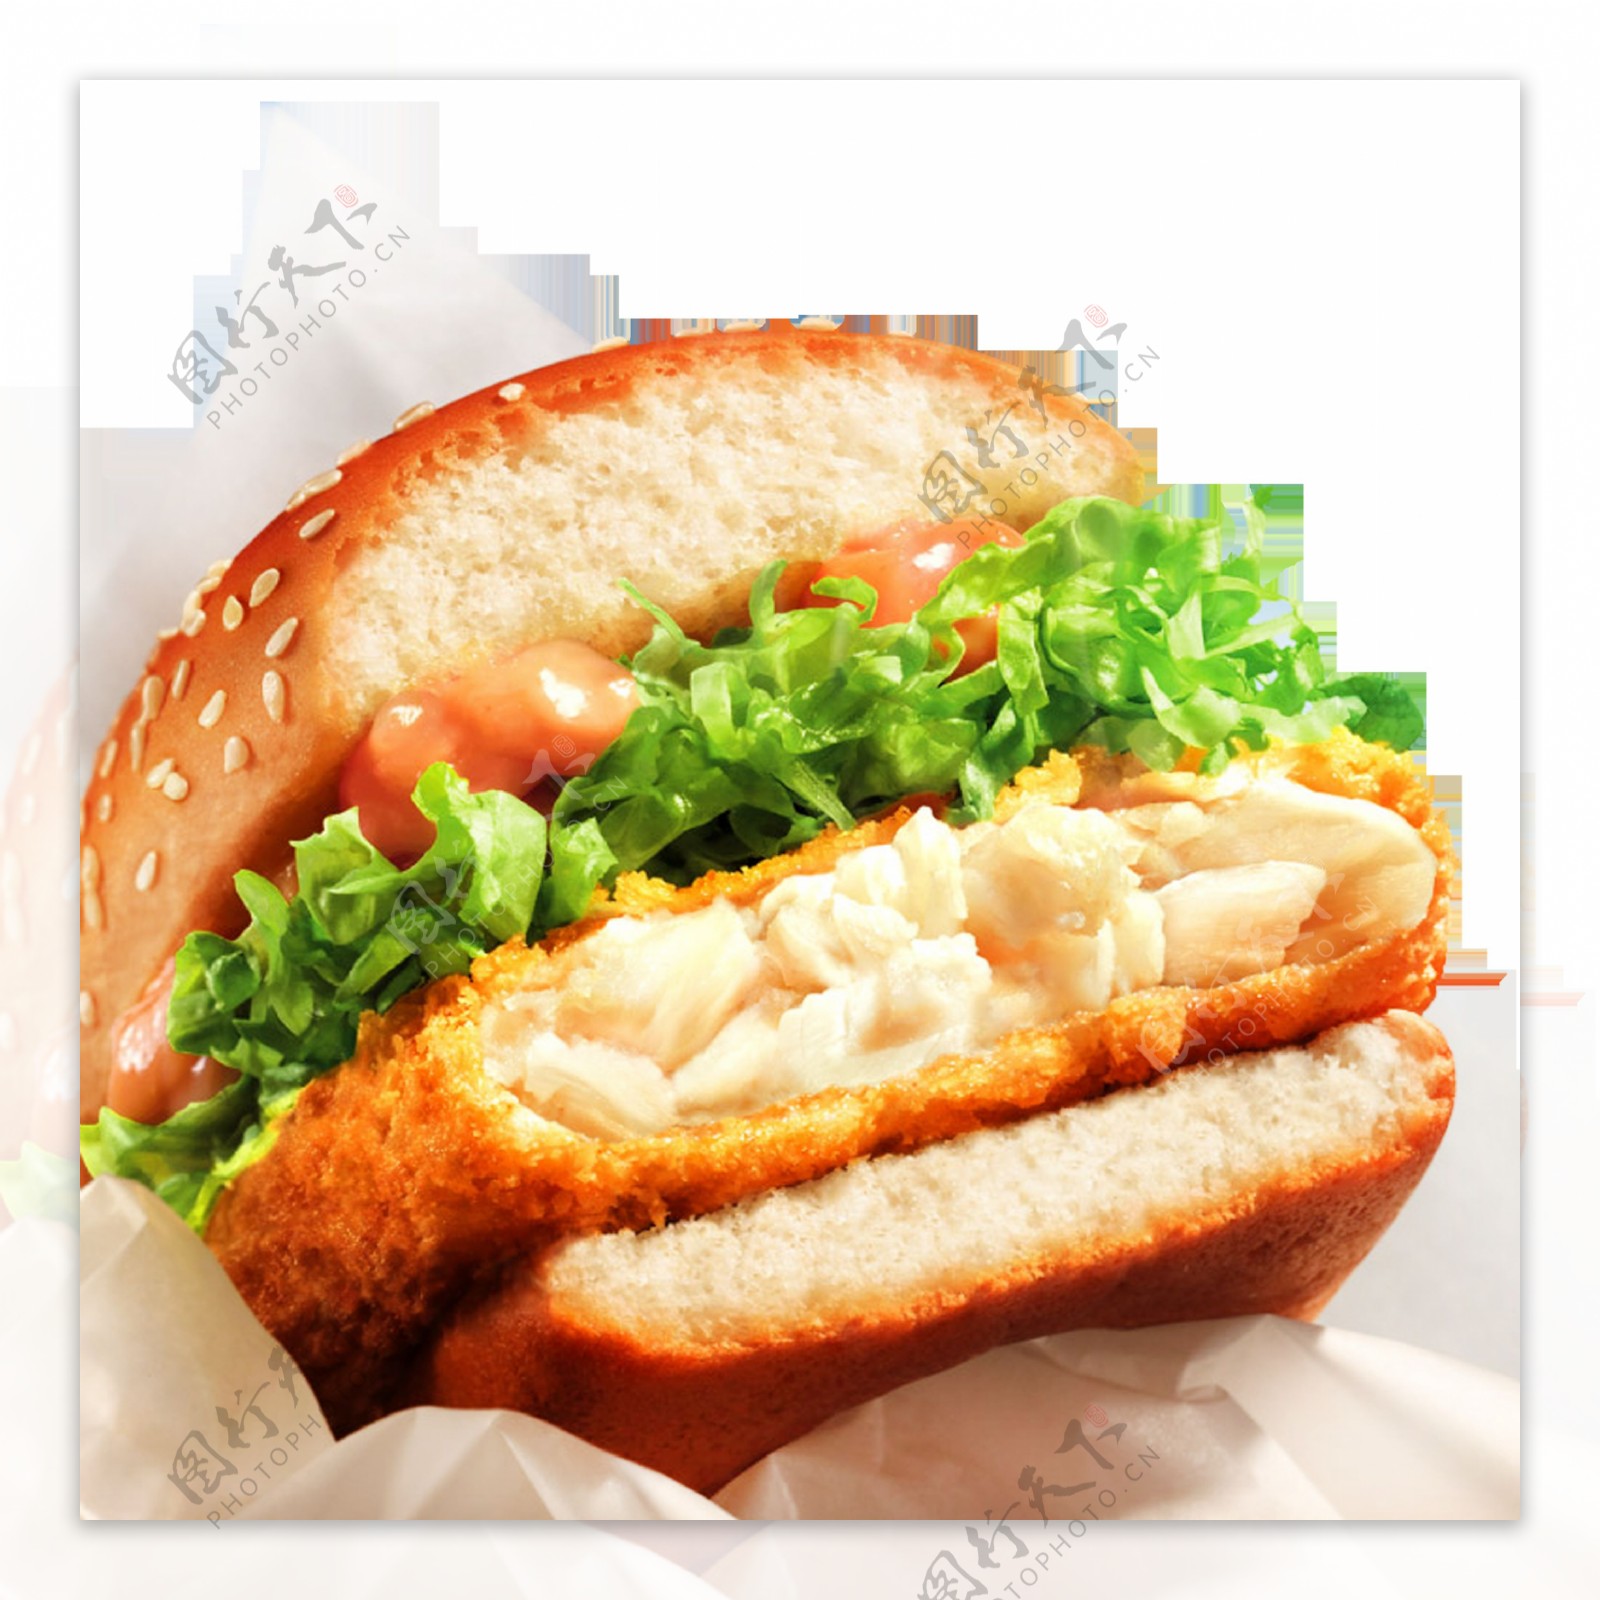 大块鳕鱼汉堡高清美食摄影图片